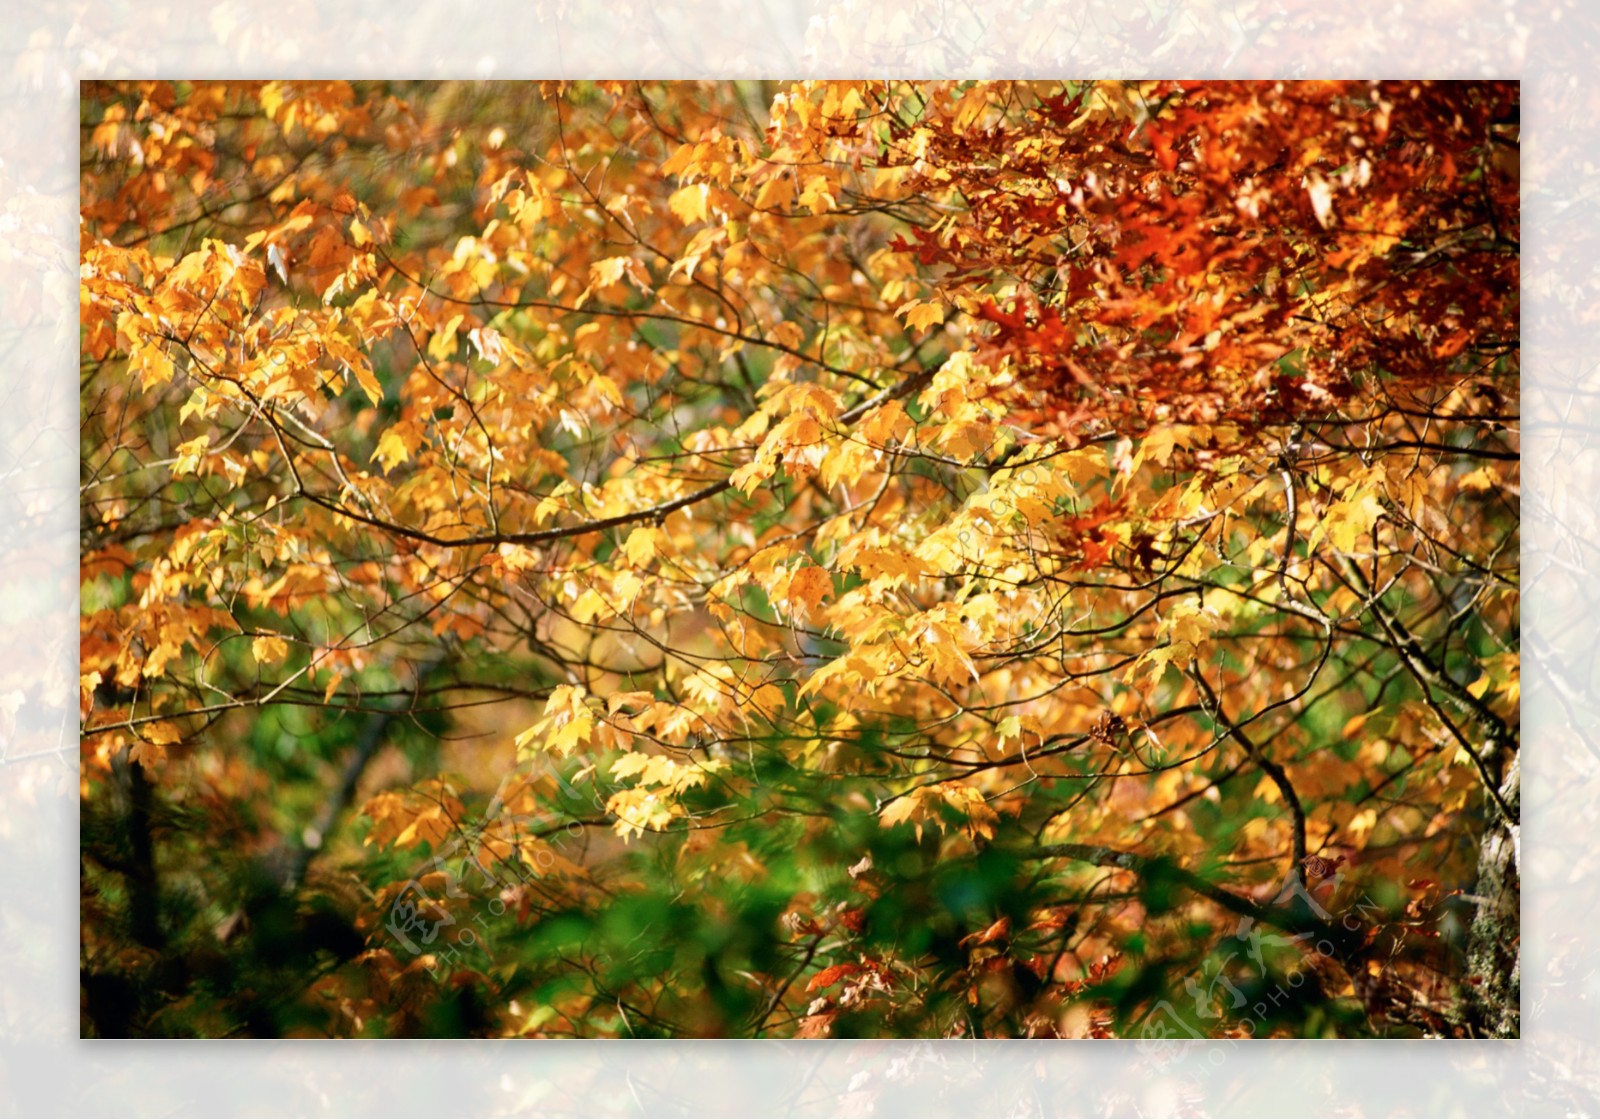 秋天树林风景图片